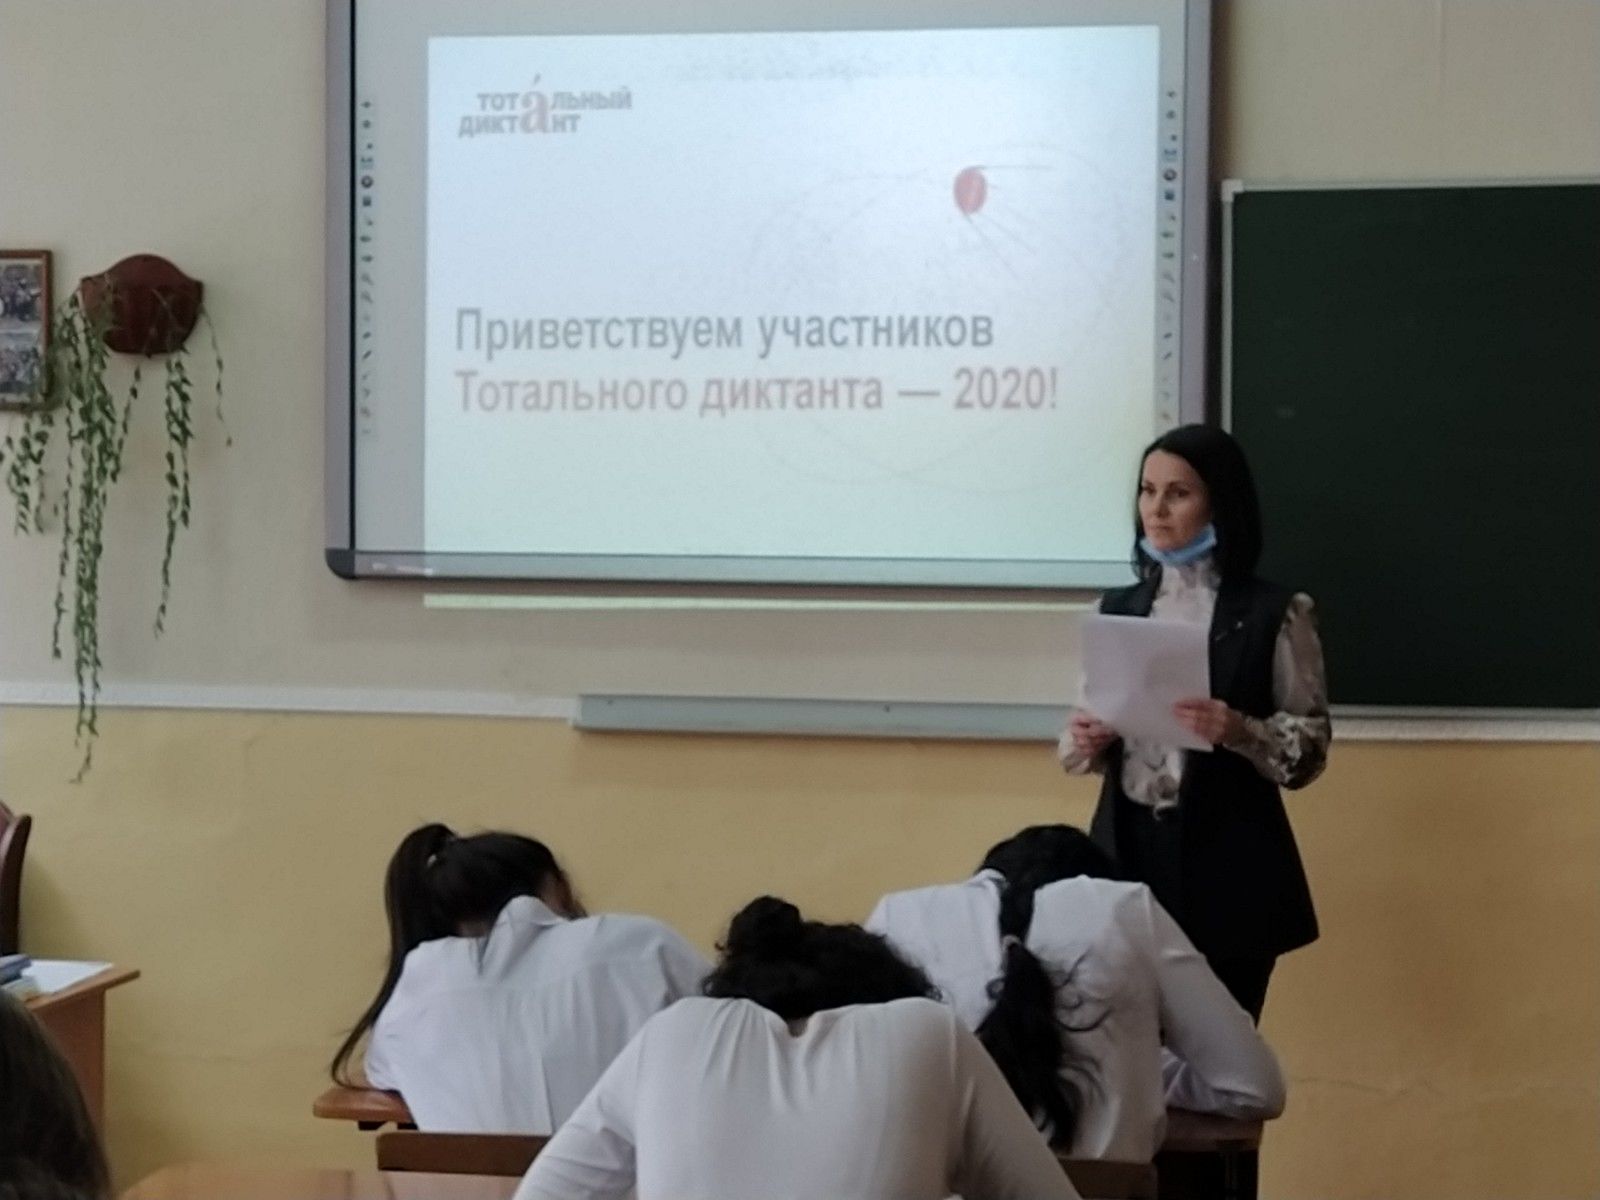 В эти минуты в Бугульминских образовательных учреждениях проходит "Тотальный диктант-2020"